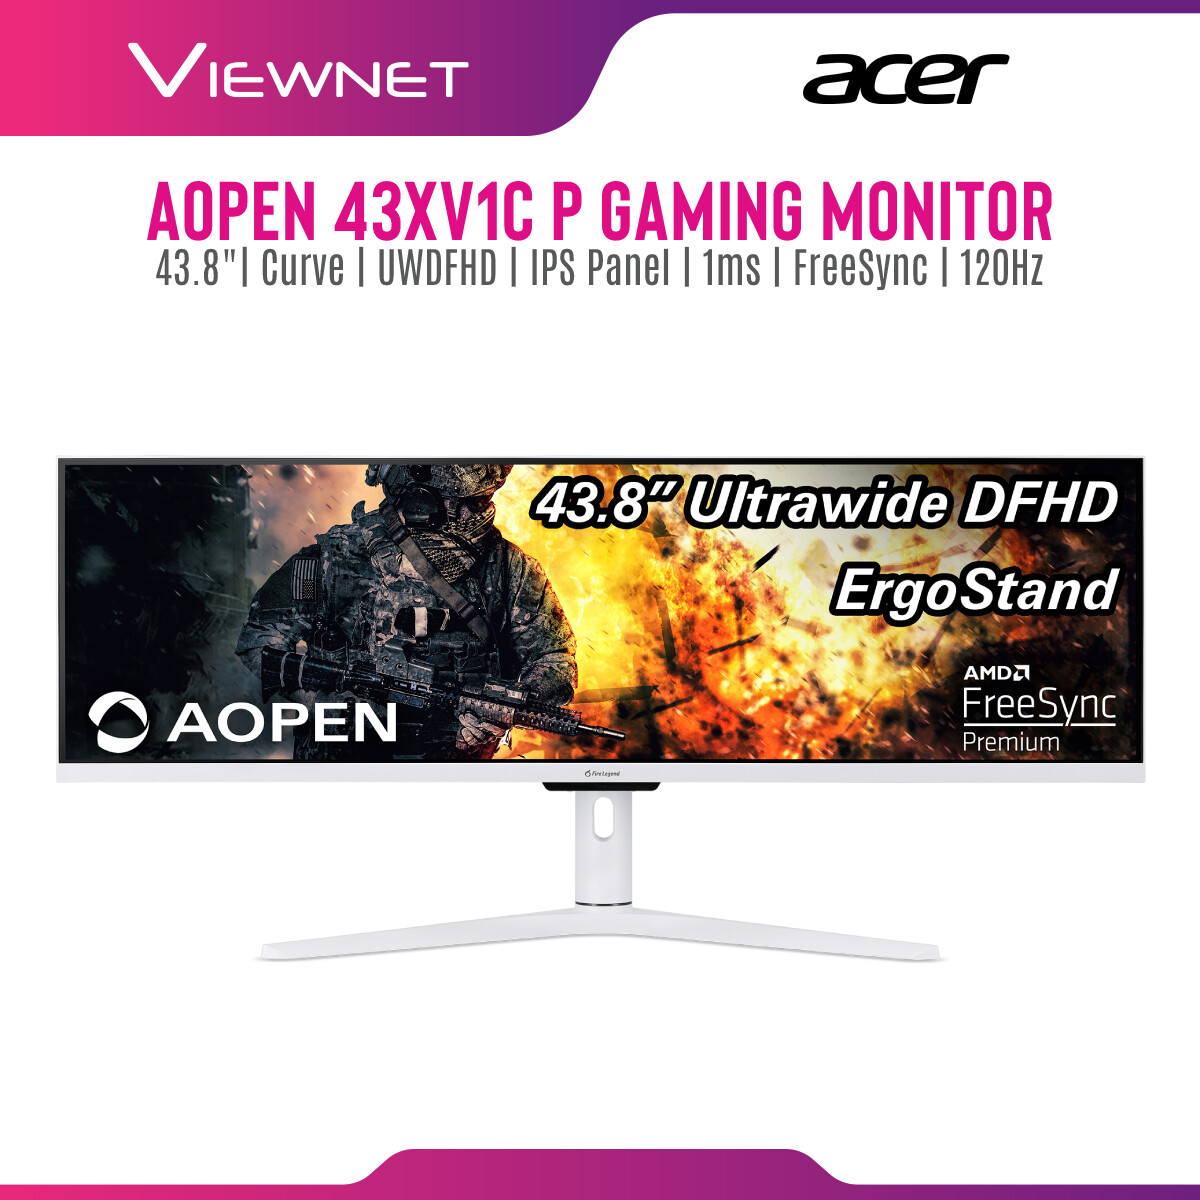 Acer AOpen 43XV1CP Curve 43.8